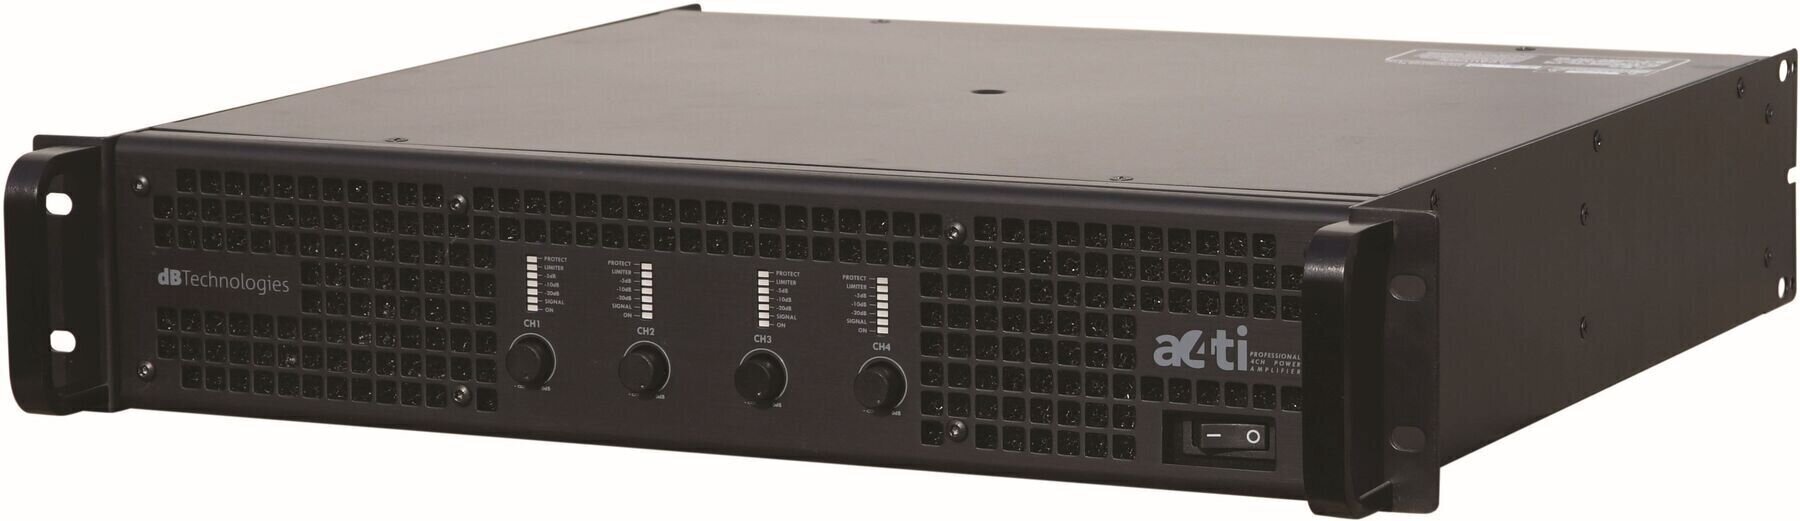 Amplificador de potencia de salida dB Technologies A4TI Amplificador de potencia de salida